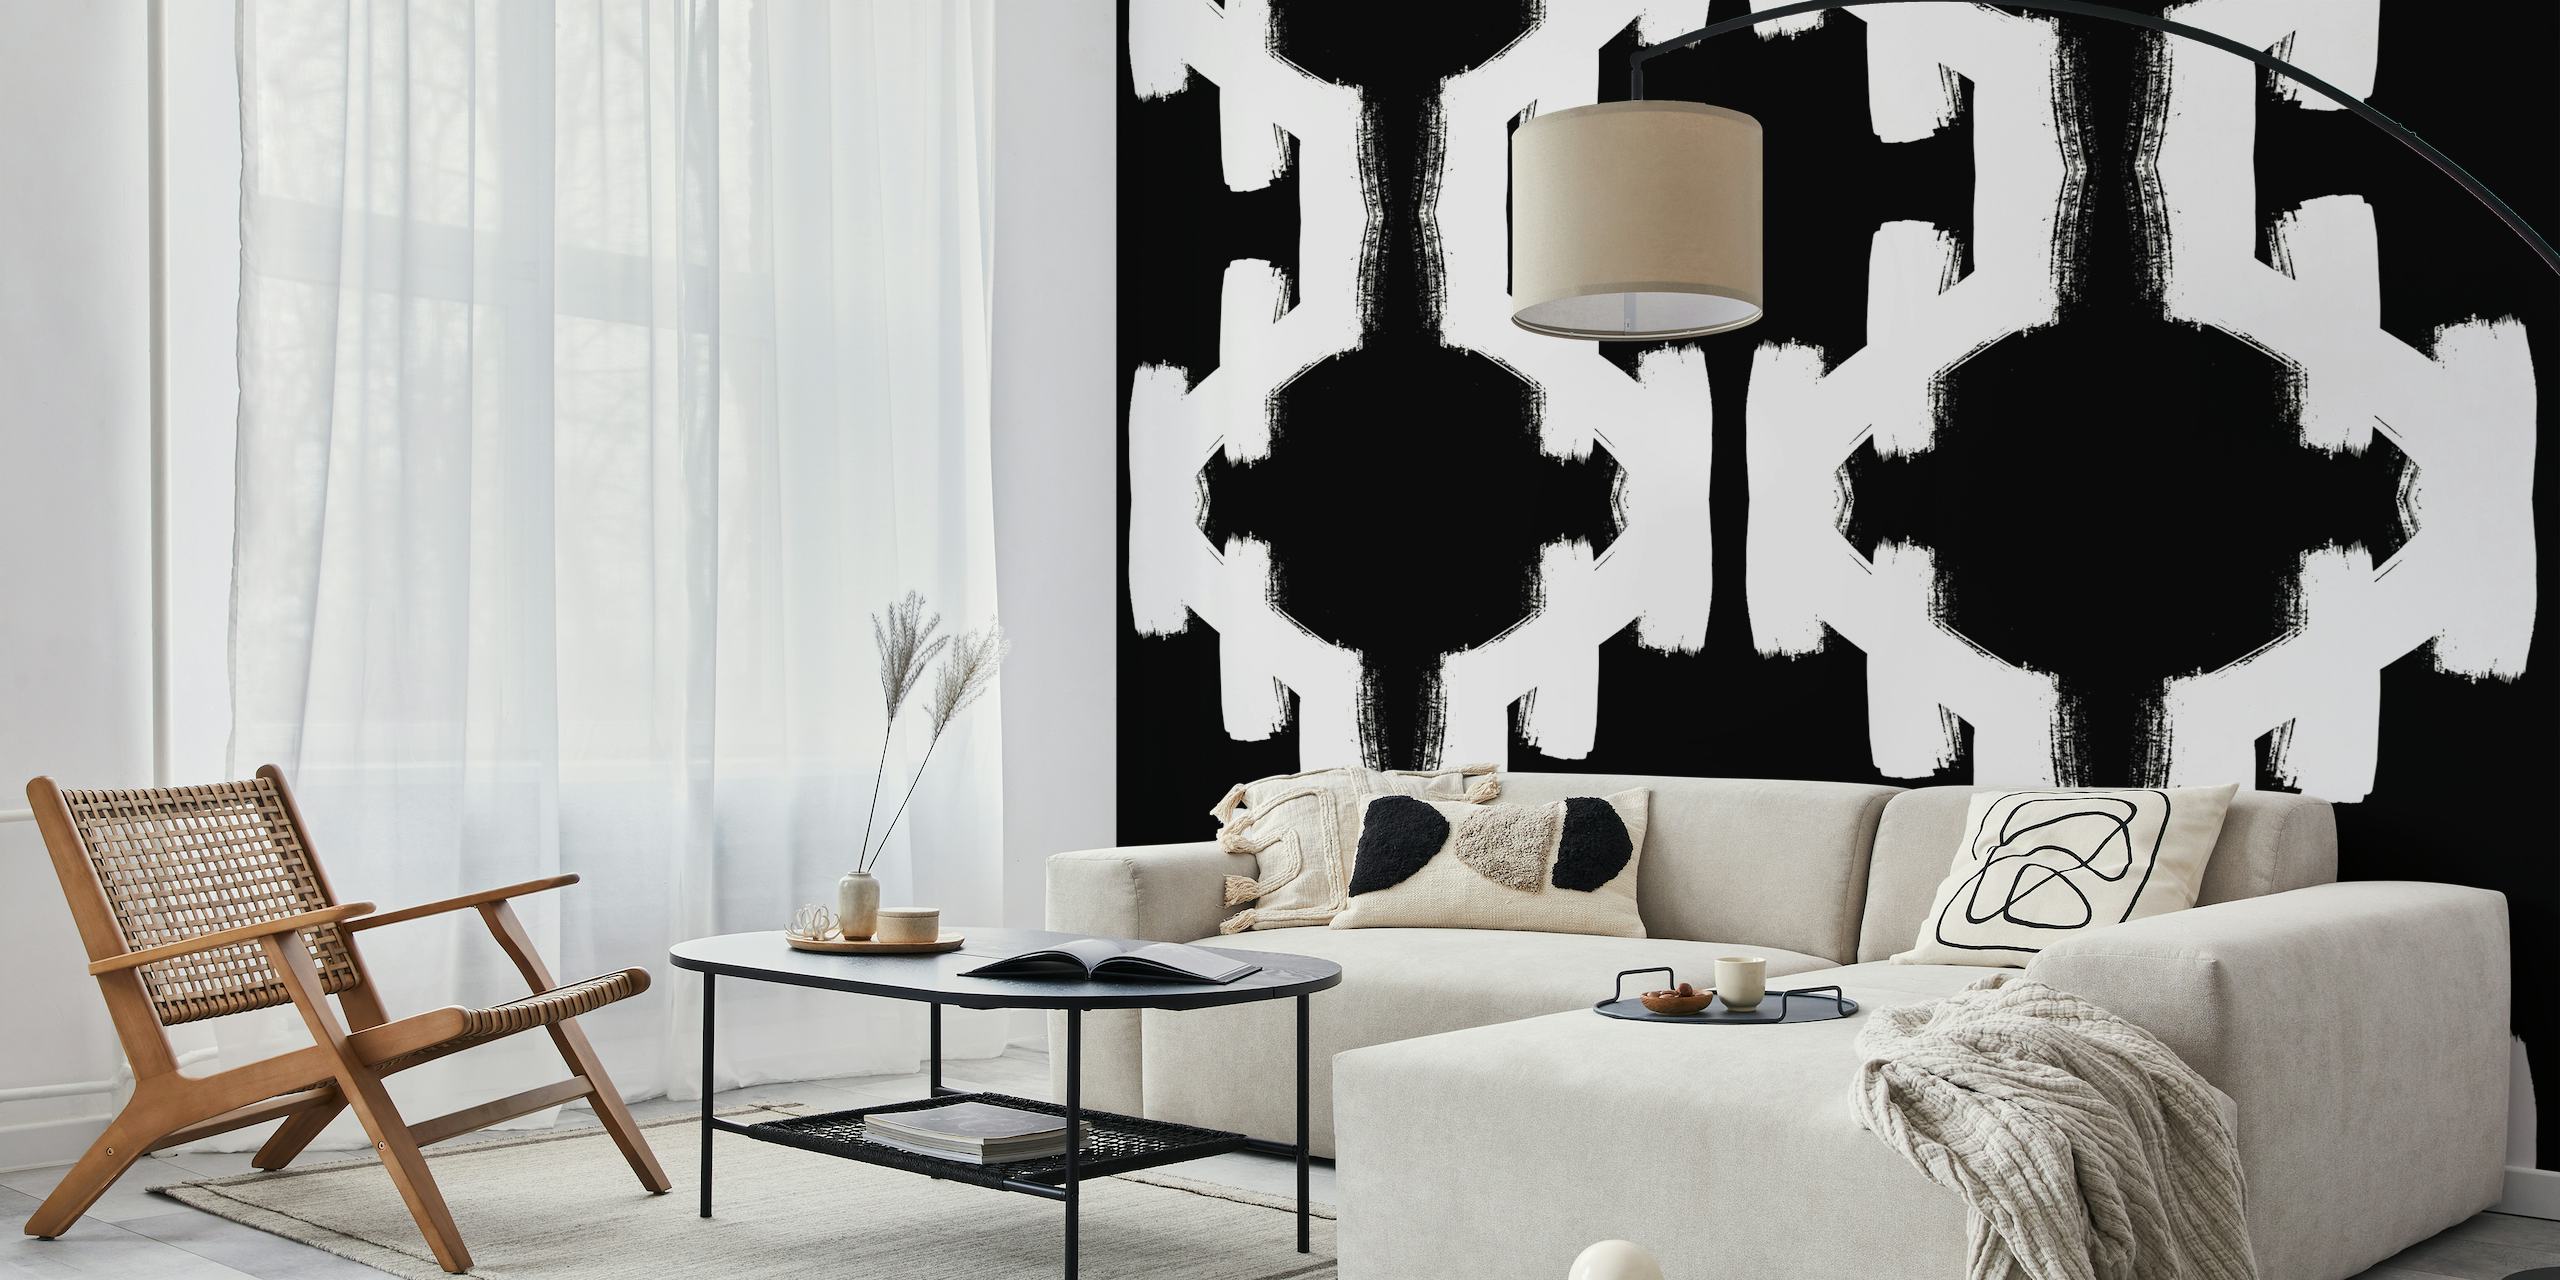 Fotomural vinílico de parede com padrão geométrico abstrato preto e branco para design de interiores contemporâneo